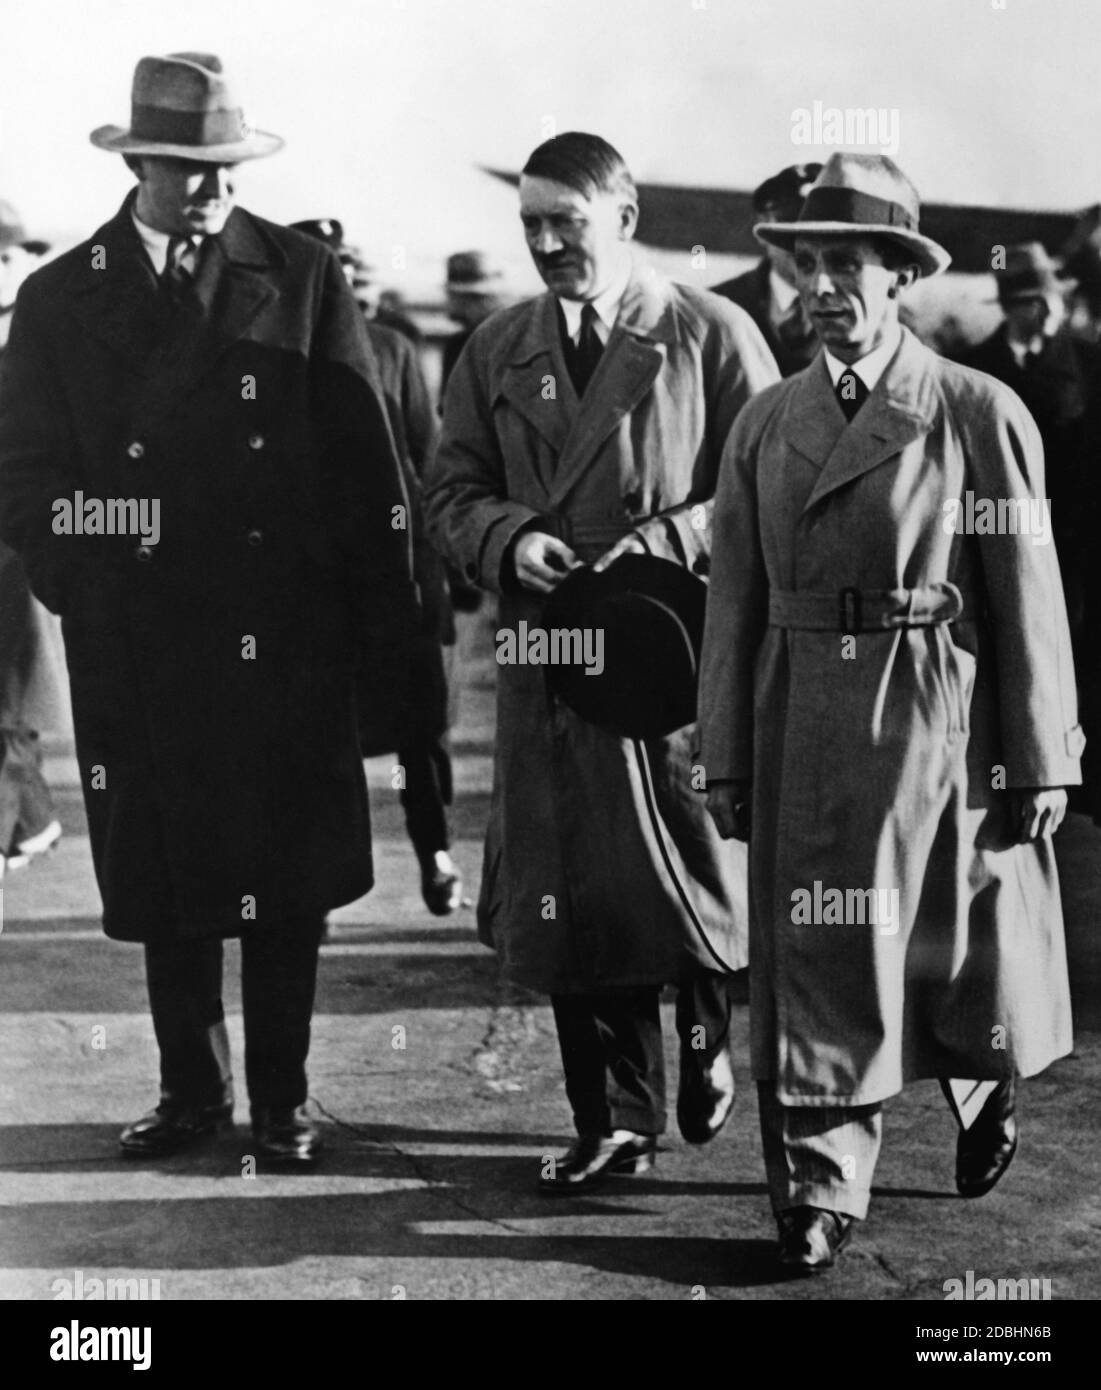 Adolf Hitler est accueilli par Paul von Hindenburg au Tempelhofer Feld à Berlin. Le Dr Joseph Goebbels marche à côté d'Hitler. Dans cette période Hitler a toujours porté un fouet de chien avec lui comme accessoire. Lui et Goebbels portaient le trench coat, que Hitler a présenté comme un vêtement et a essayé de se distancer du style vestimentaire des politiciens de Weimar avec l'aide de cela. Banque D'Images